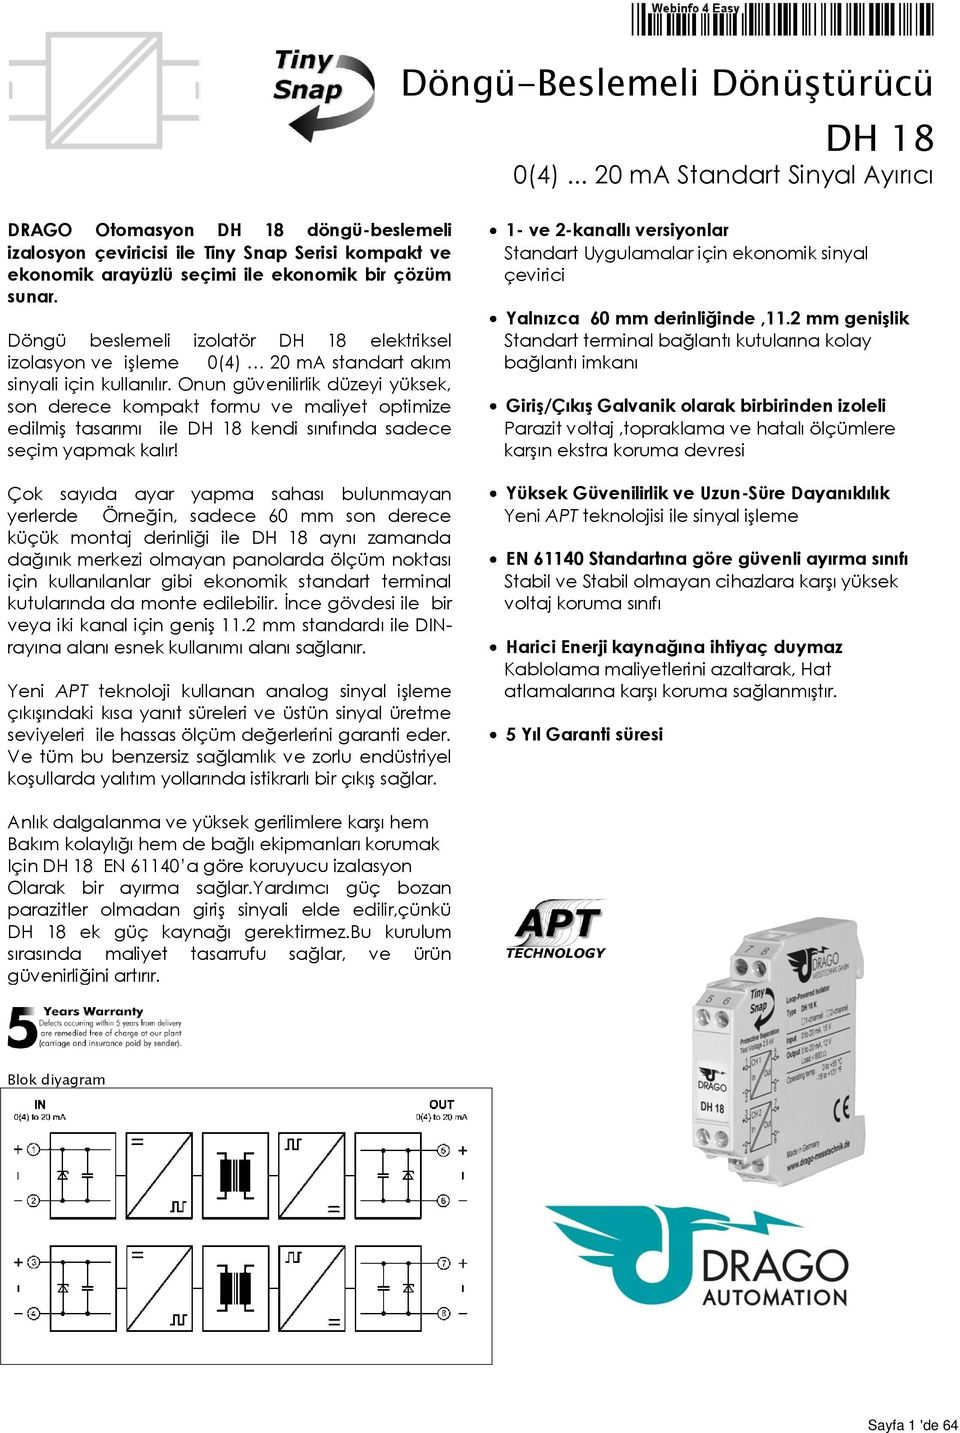 Döngü beslemeli izolatör DH 18 elektriksel izolasyon ve işleme 0(4) 20 ma standart akım sinyali için kullanılır.